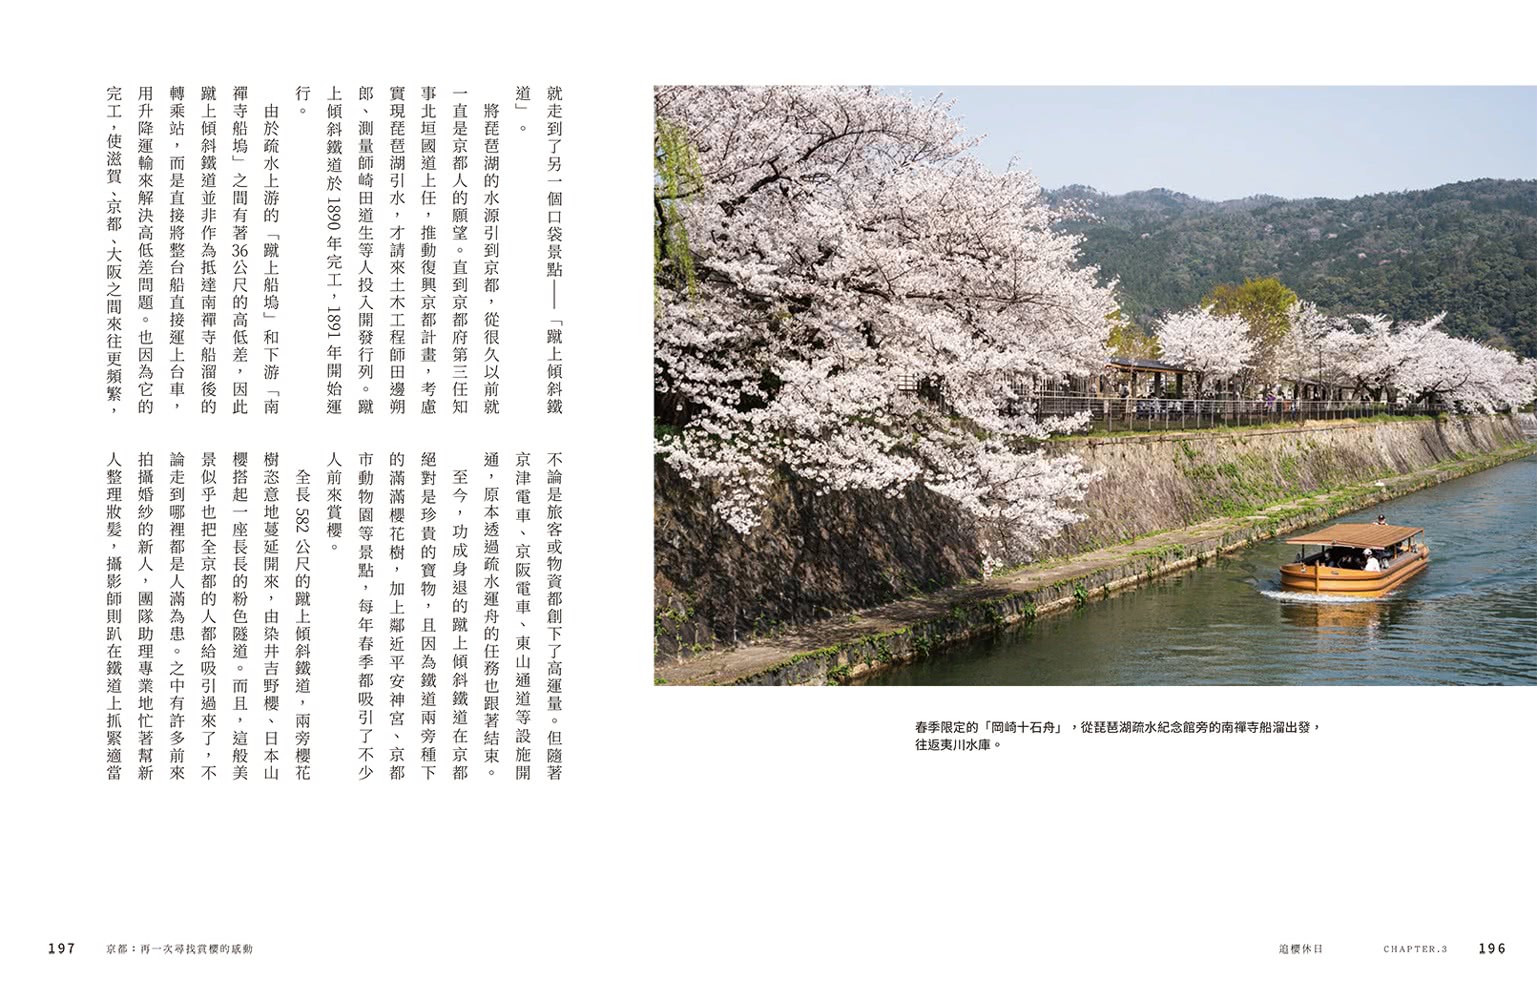 日本 慢慢旅：遇見山城、花季、島嶼、海味、街景日常 2190X四季風物詩